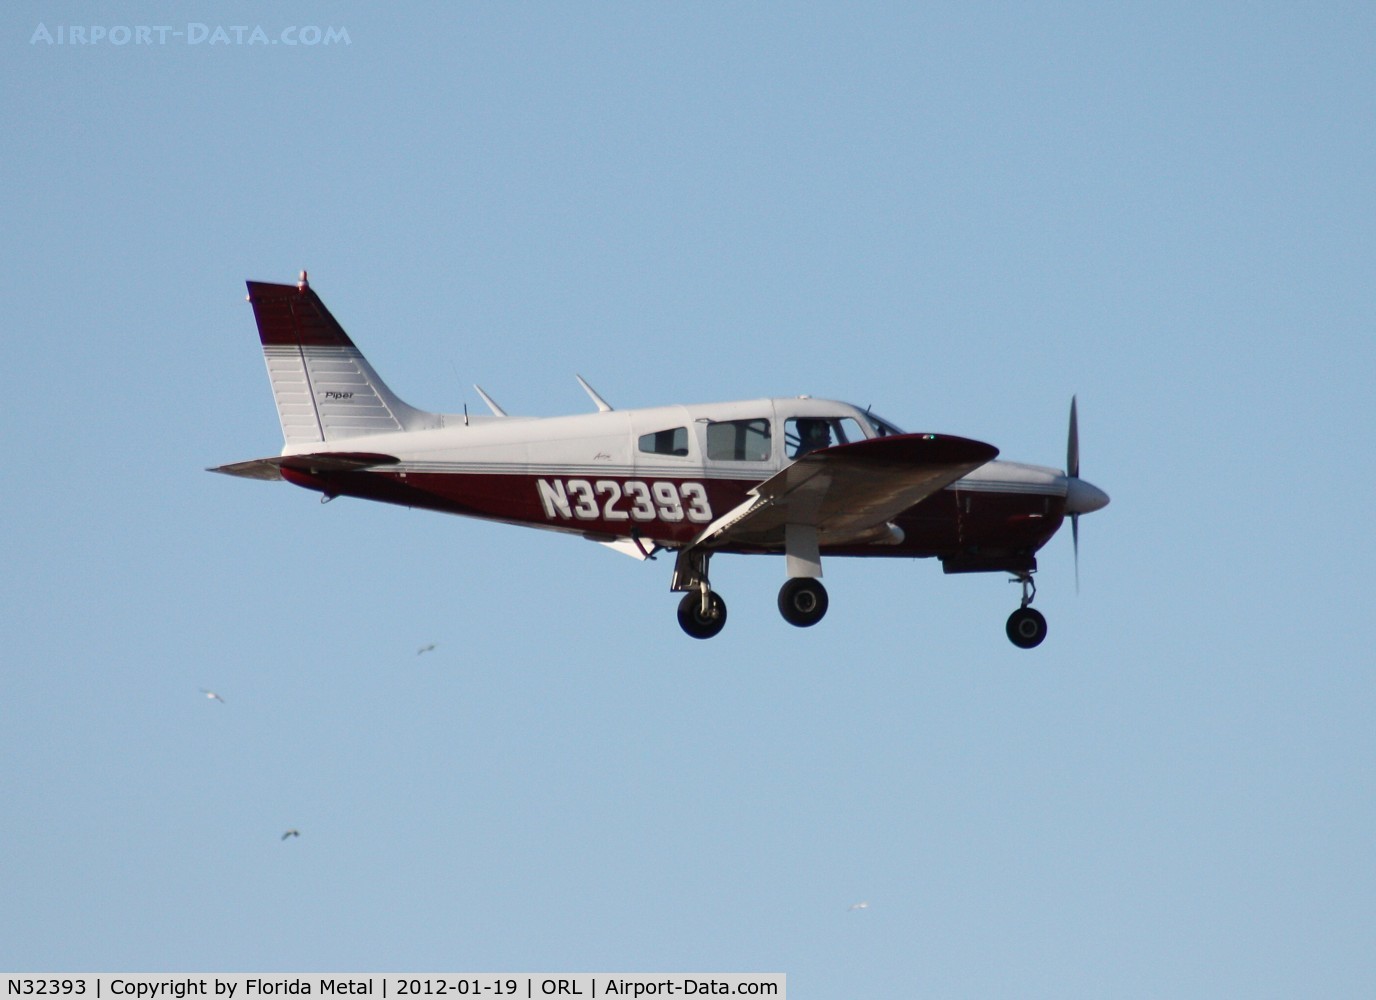 N32393, 1974 Piper PA-28R-200 C/N 28R-7535050, PA-28R-200